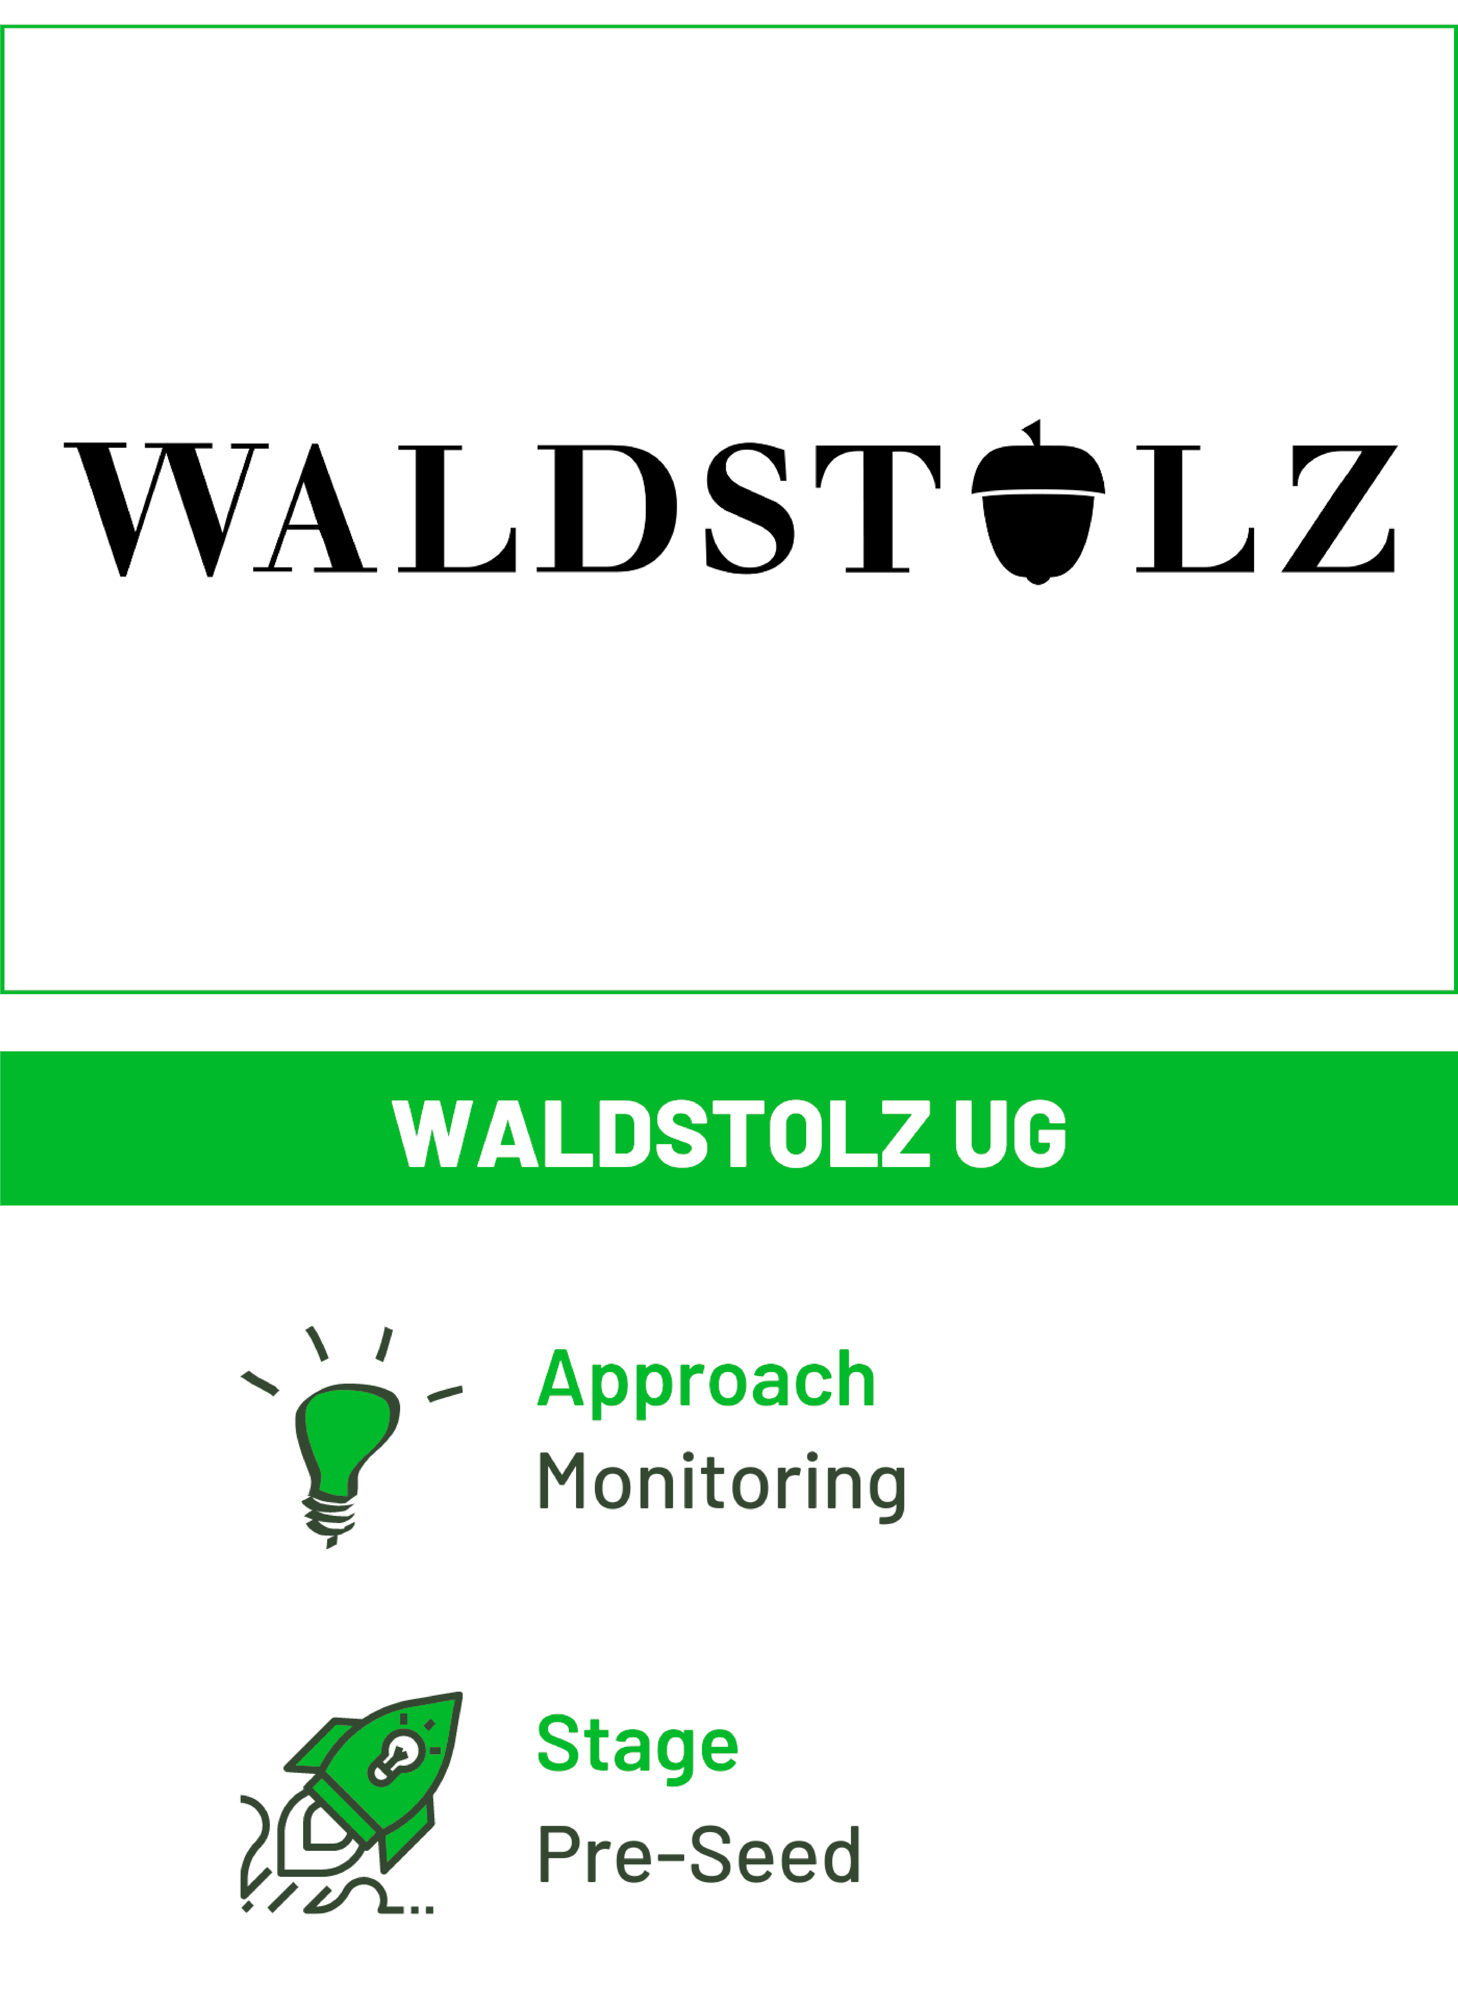 Waldstolz